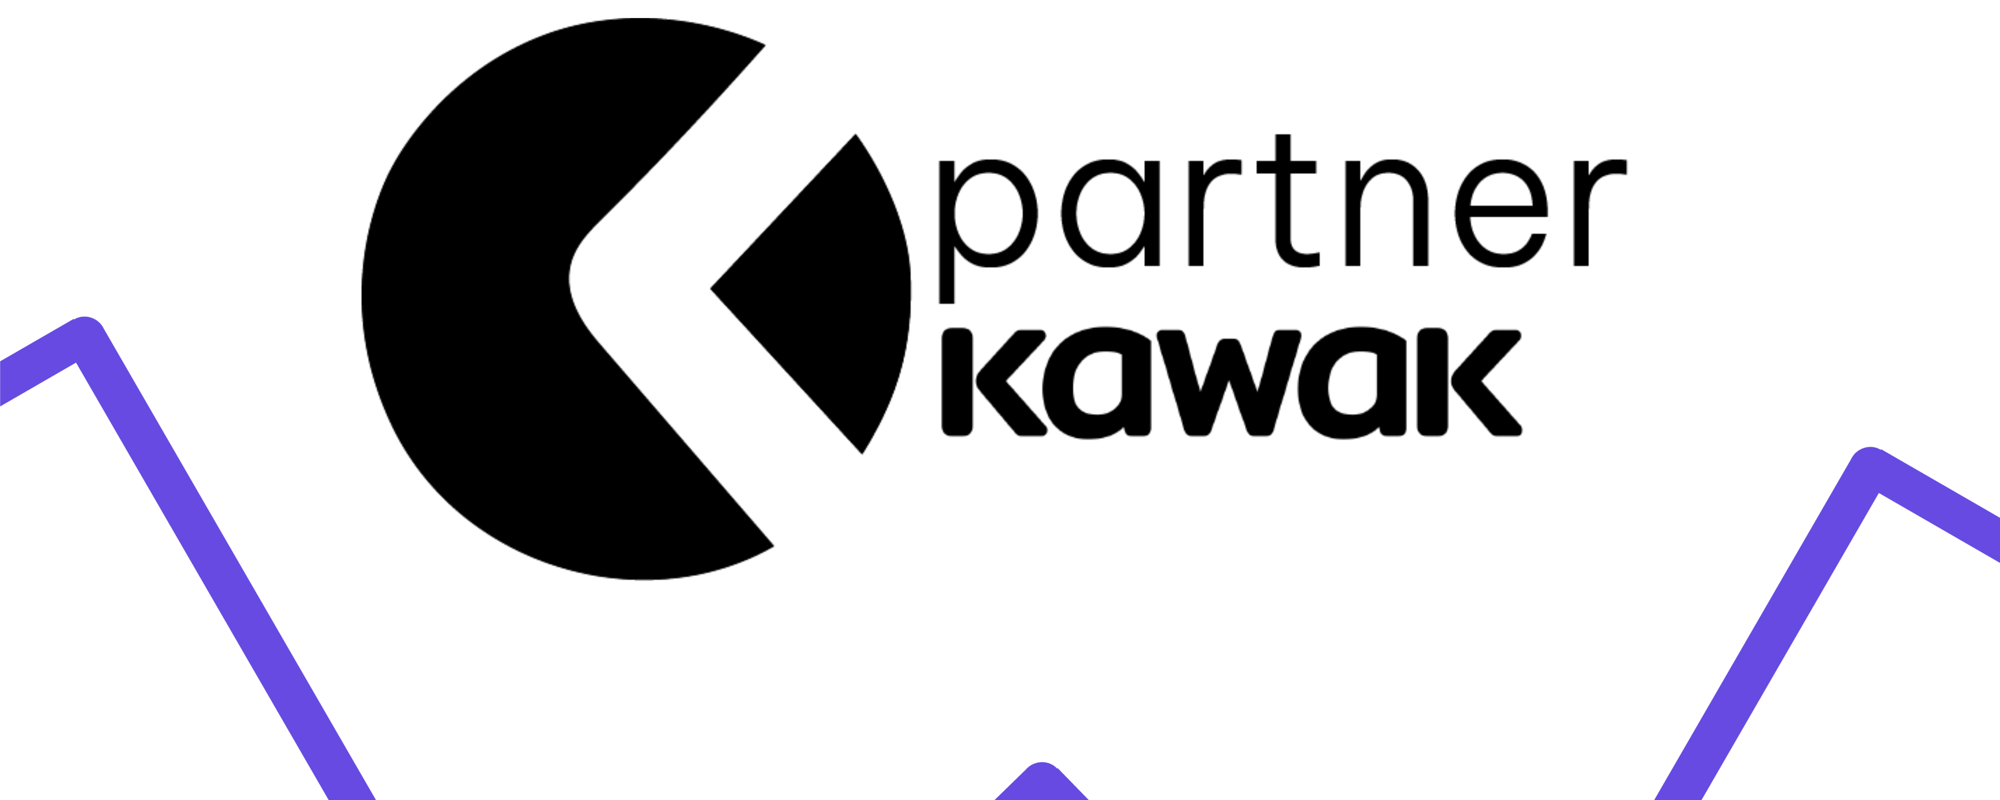 Programa de partners kawak afiliate